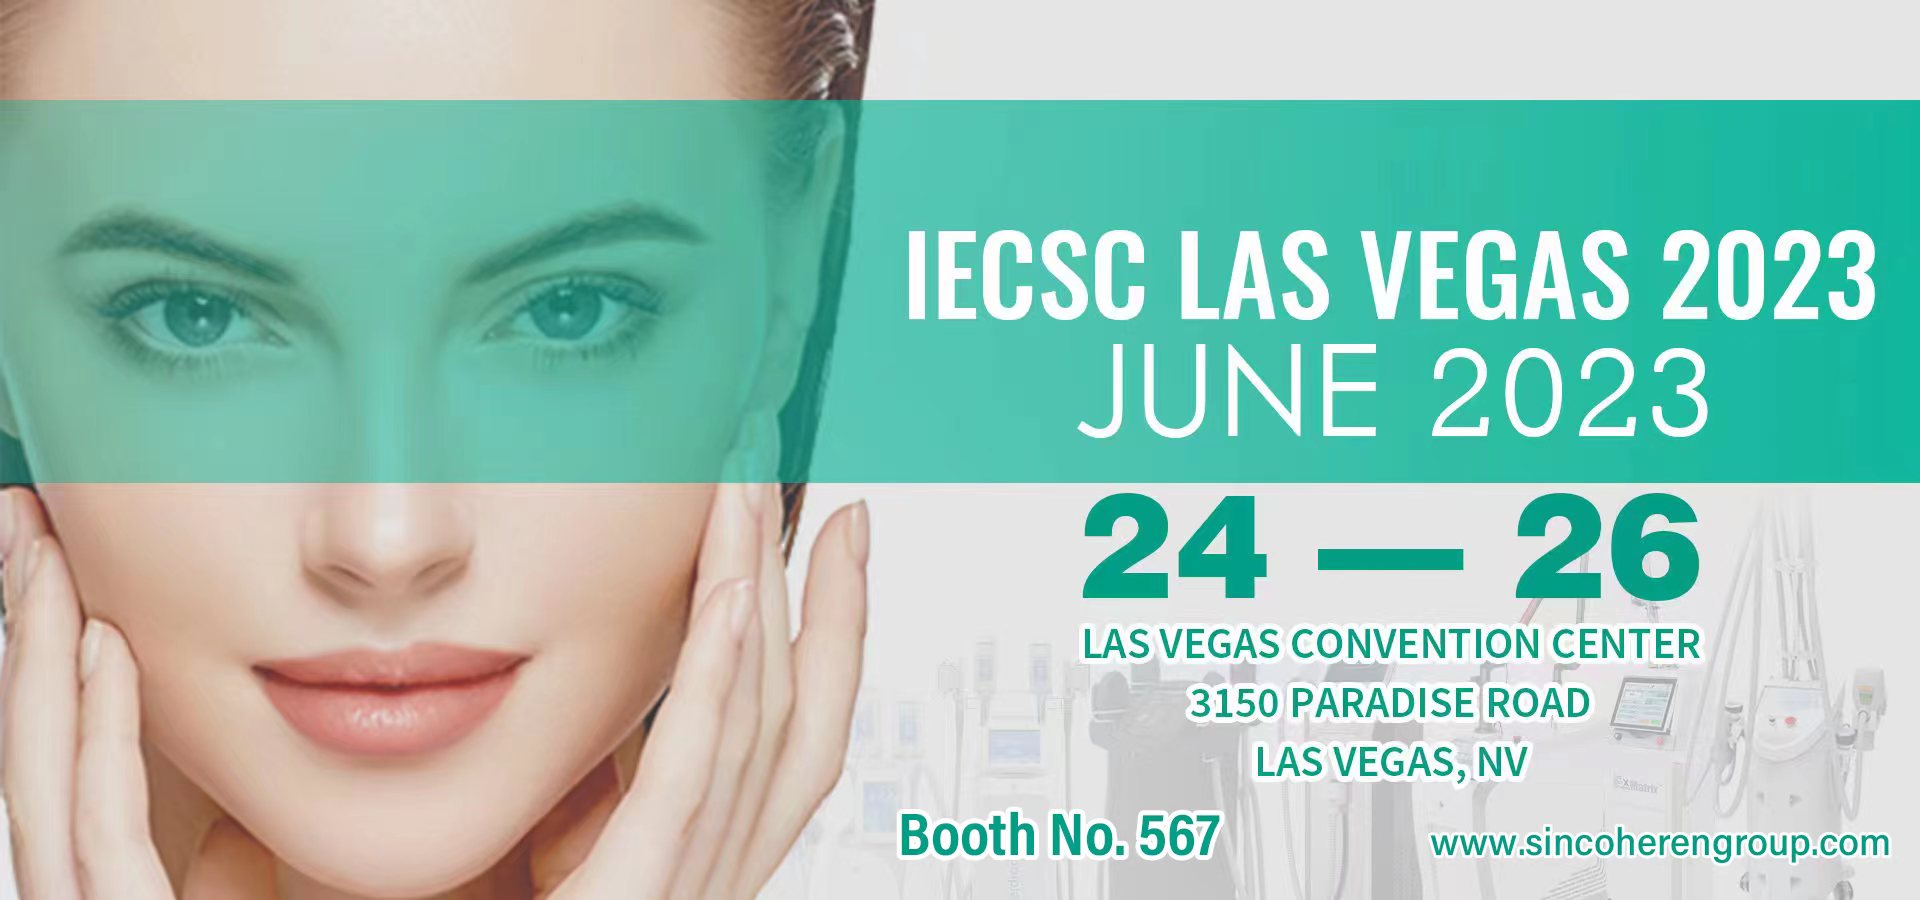 Sincoheren te invita a asistir a la exposición de belleza de IECSC Las Vegas